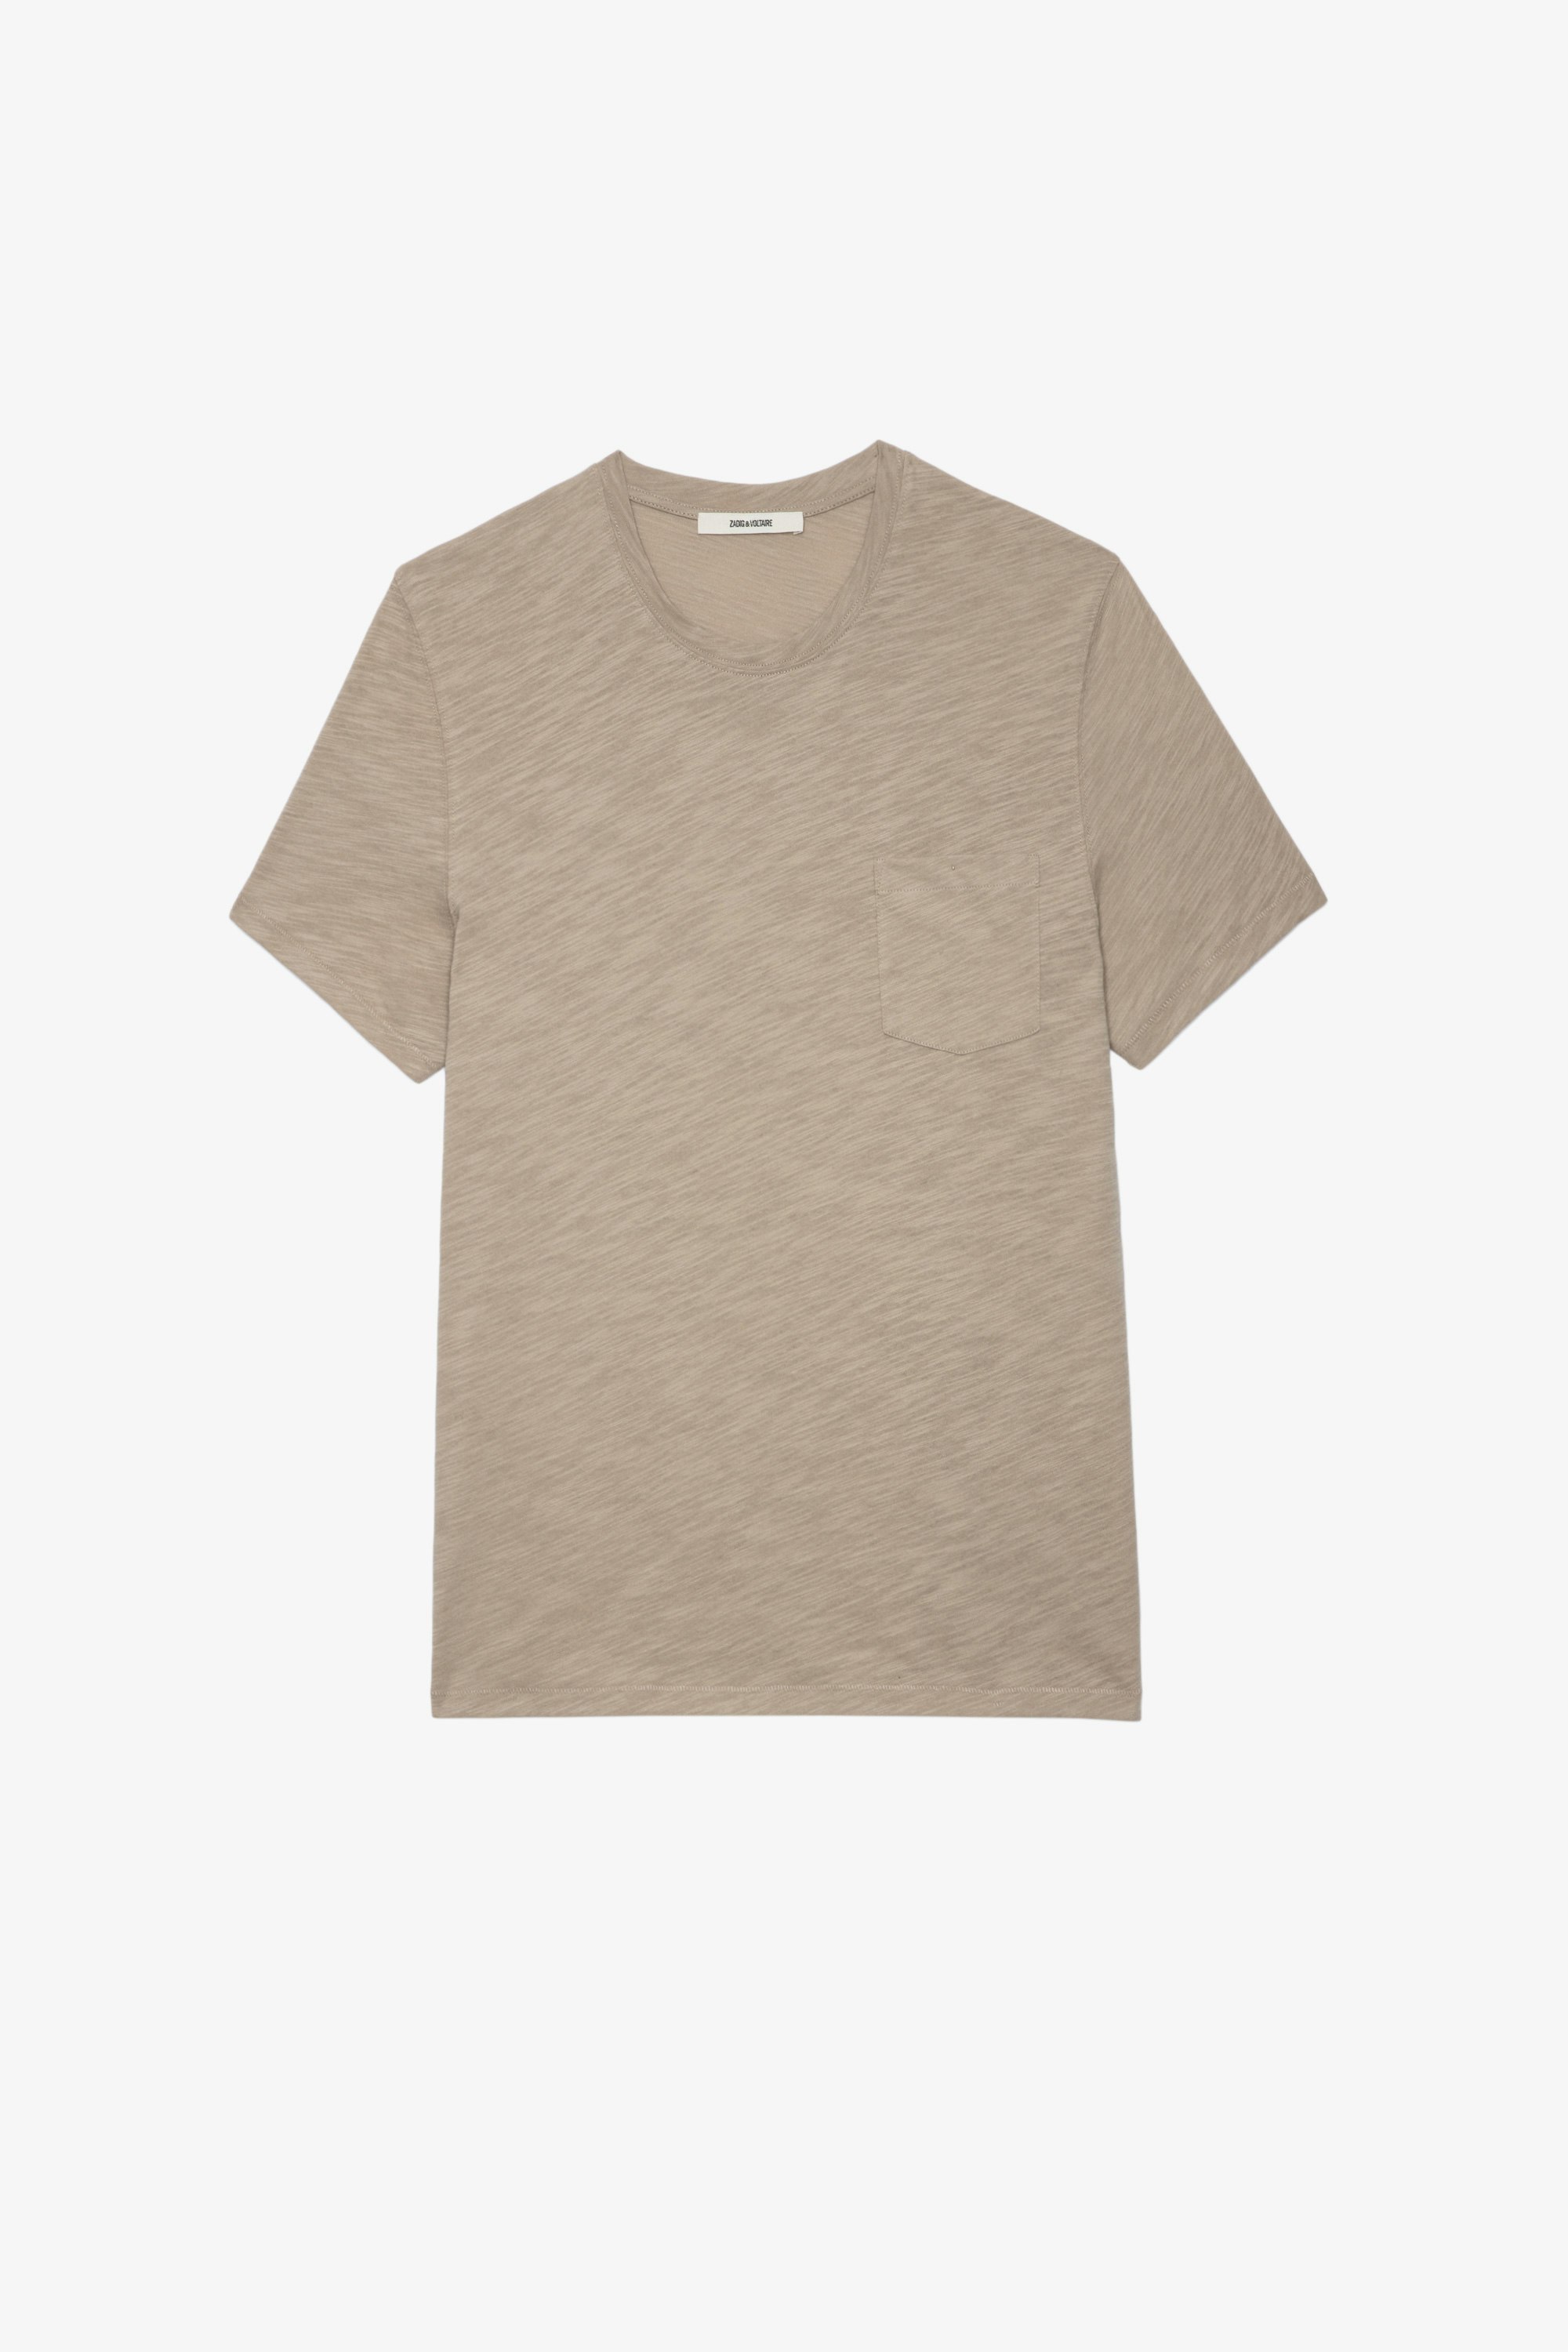 T-shirt Stockholm fiammato T-shirt in cotone fiammato beige con stampa teschio sul retro - Uomo